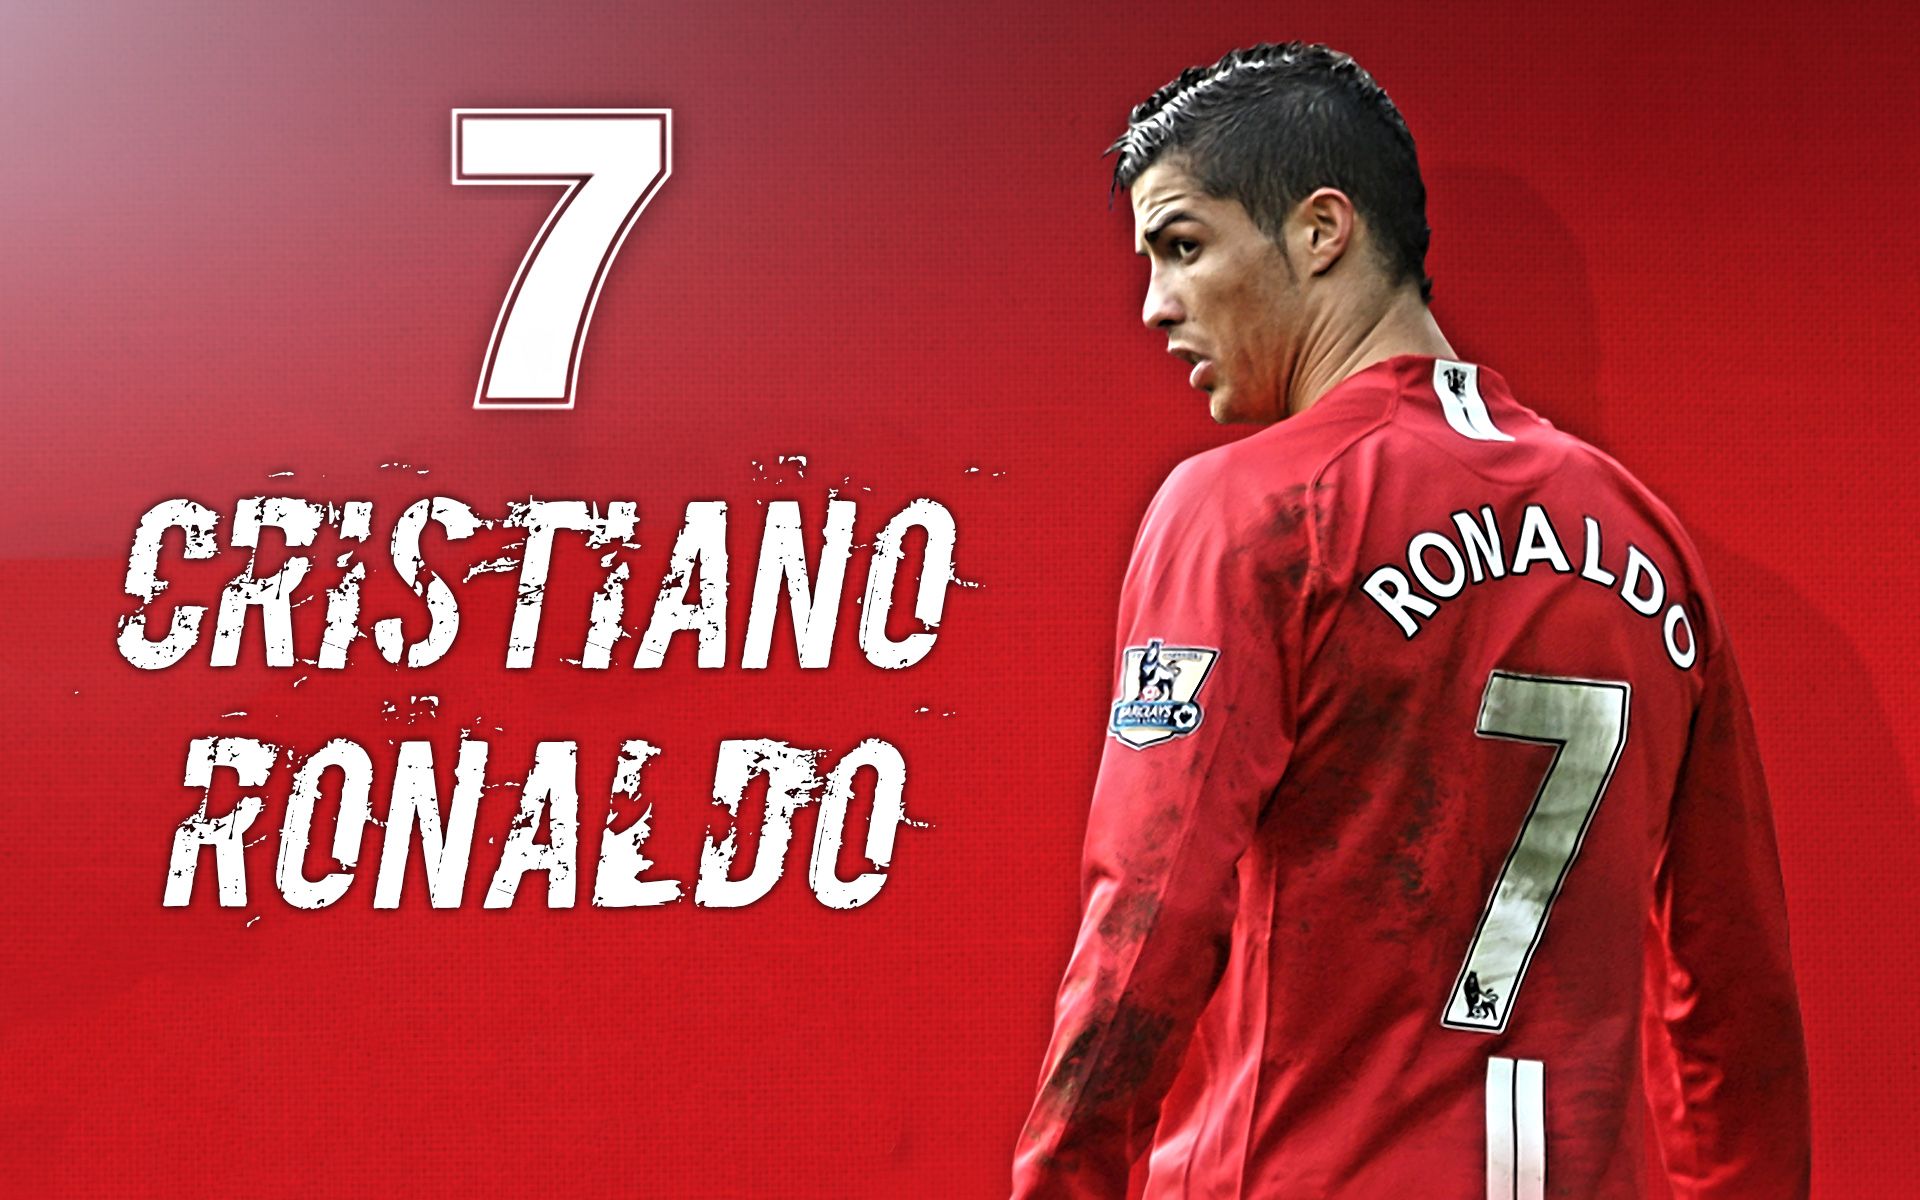 Manchester United Wallpaper Cristiano Ronaldo